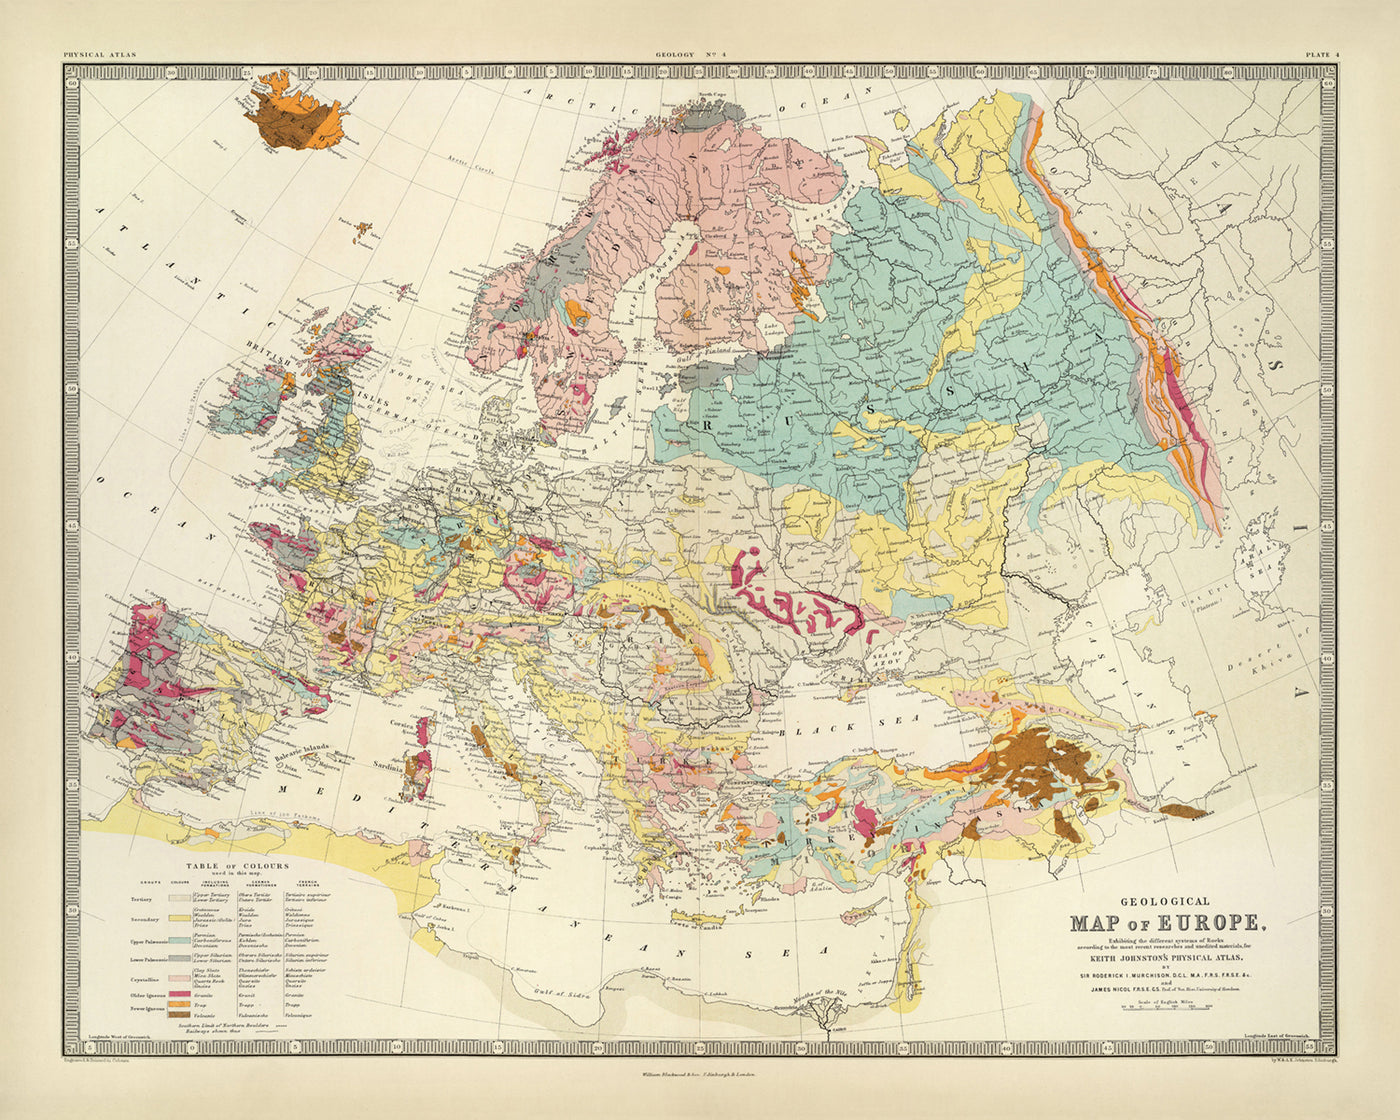 Ancienne carte géologique de l'Europe par AK Johnston, 1856 : carte géologique des montagnes, des roches et des strates